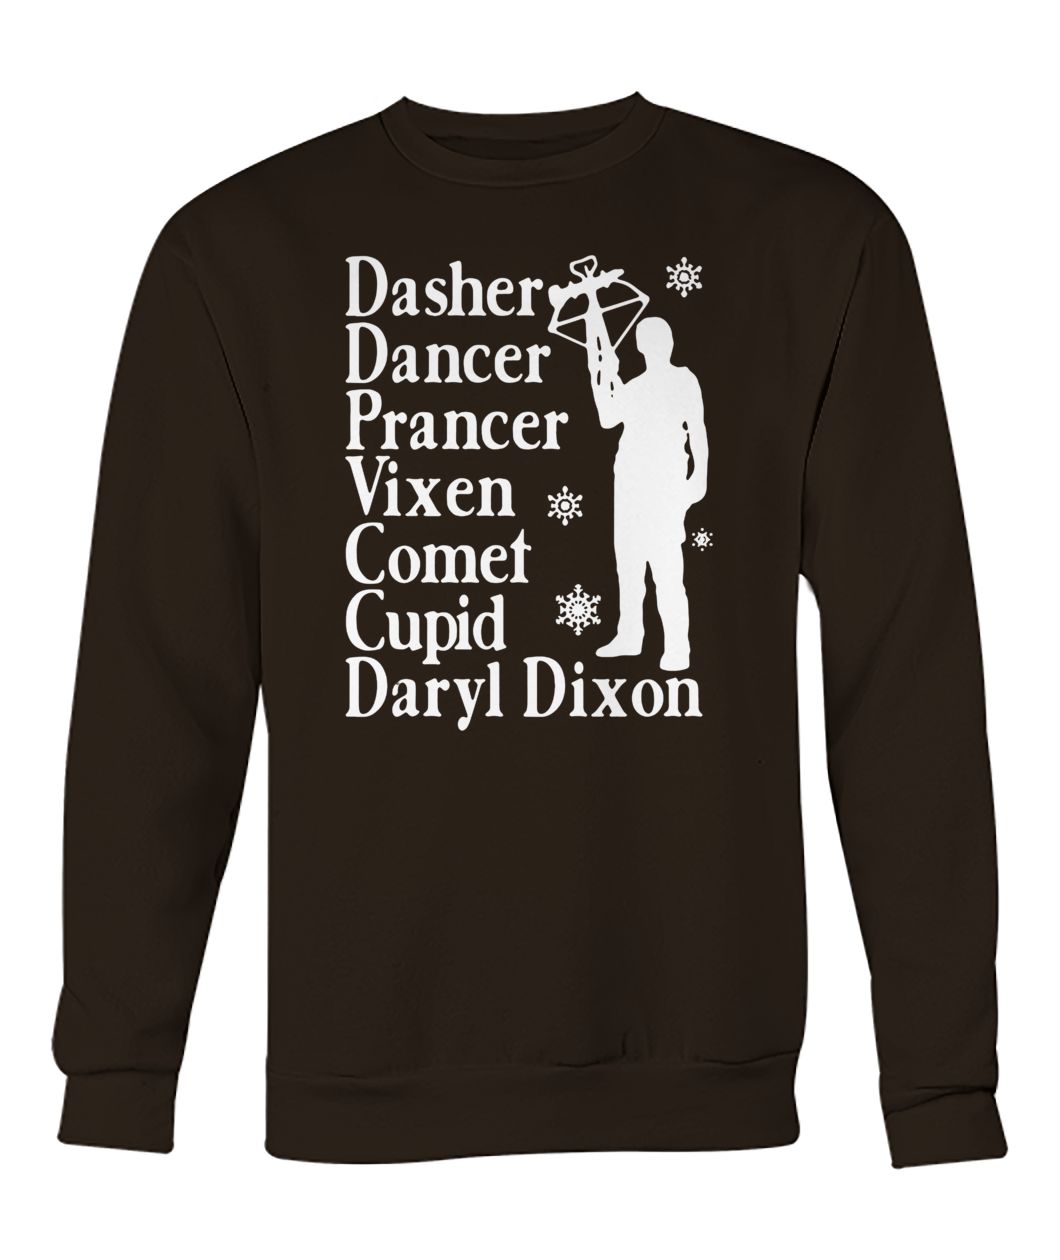 Dasher dancers prancer vixen comet cupid daryl dixon crew neck sweatshirt